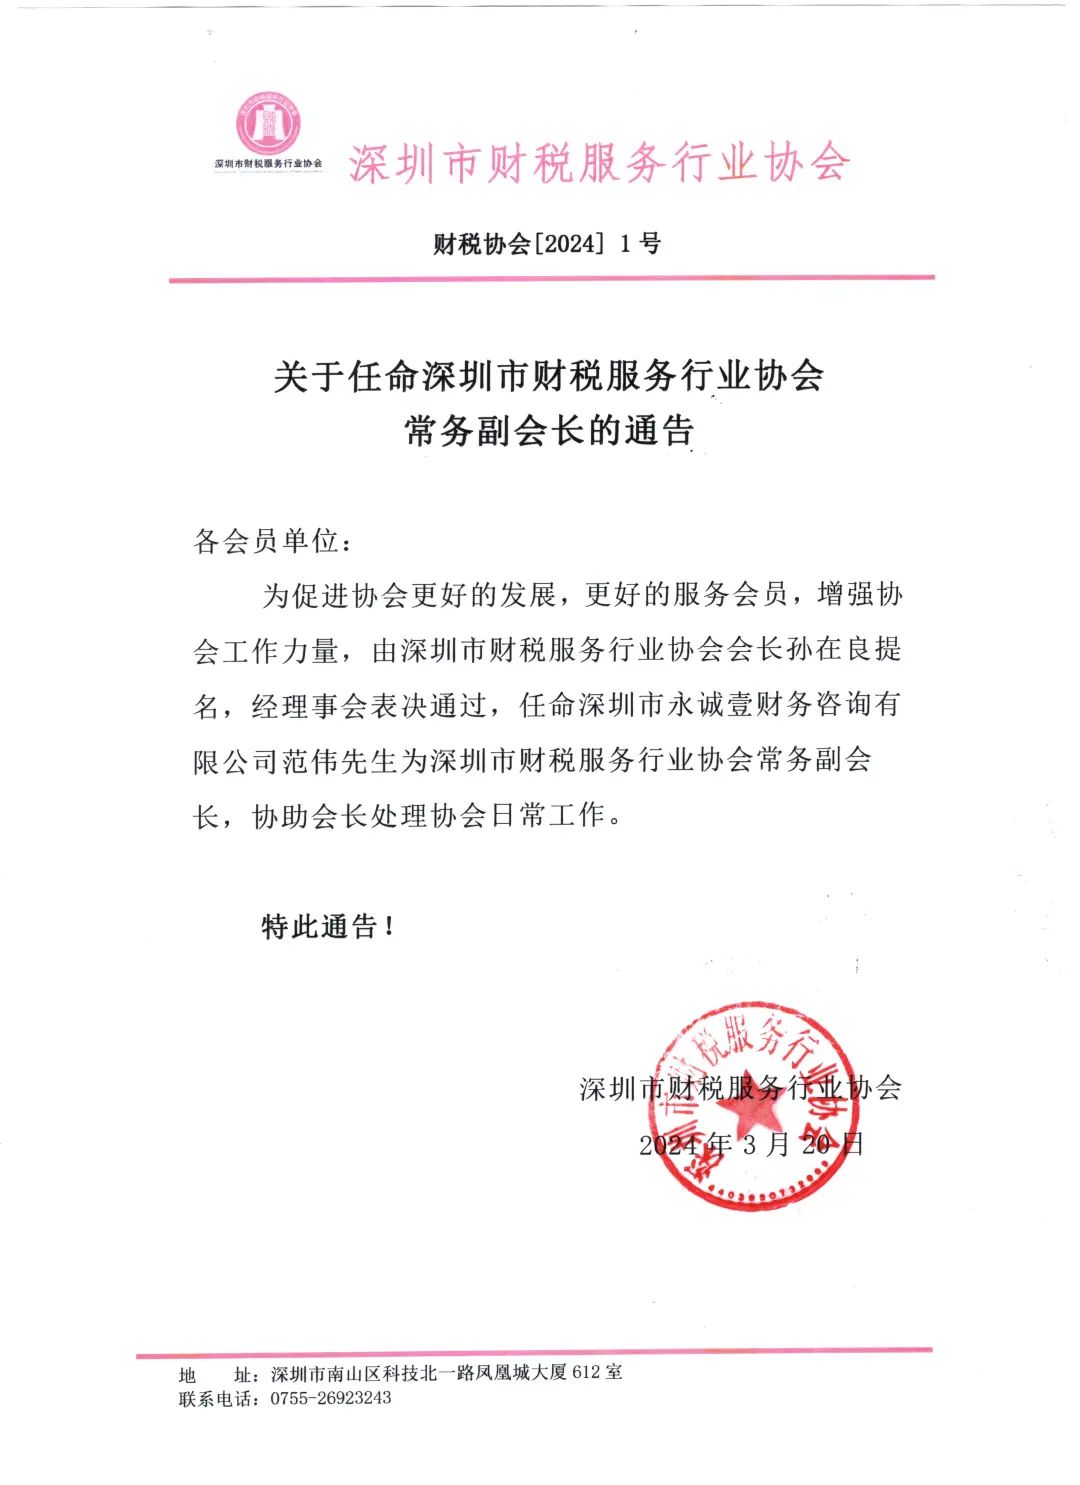 关于任命深圳市财税服务行业协会常务副会长的通告